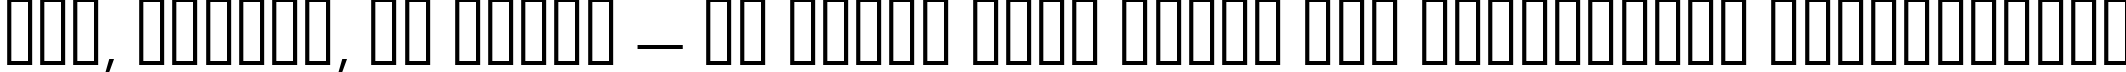 Пример написания шрифтом Antigoni Light текста на украинском